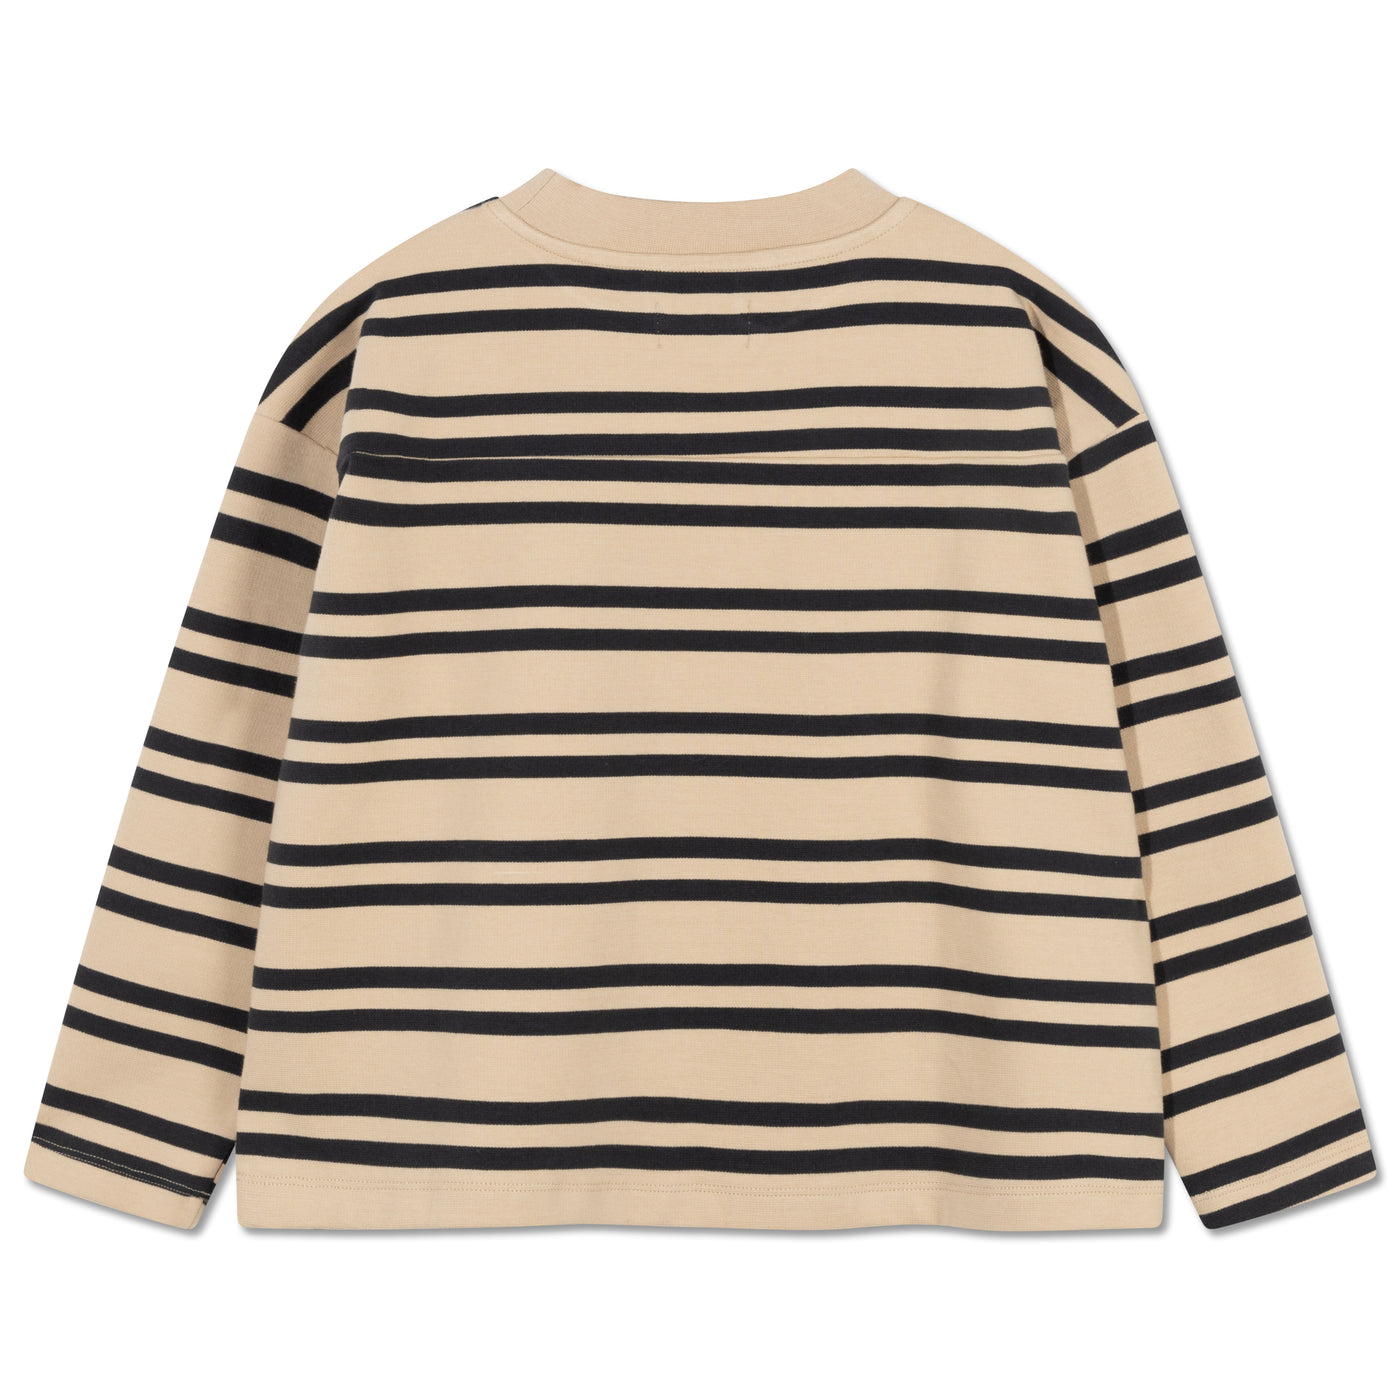 boxy sweater - natural iron stripe